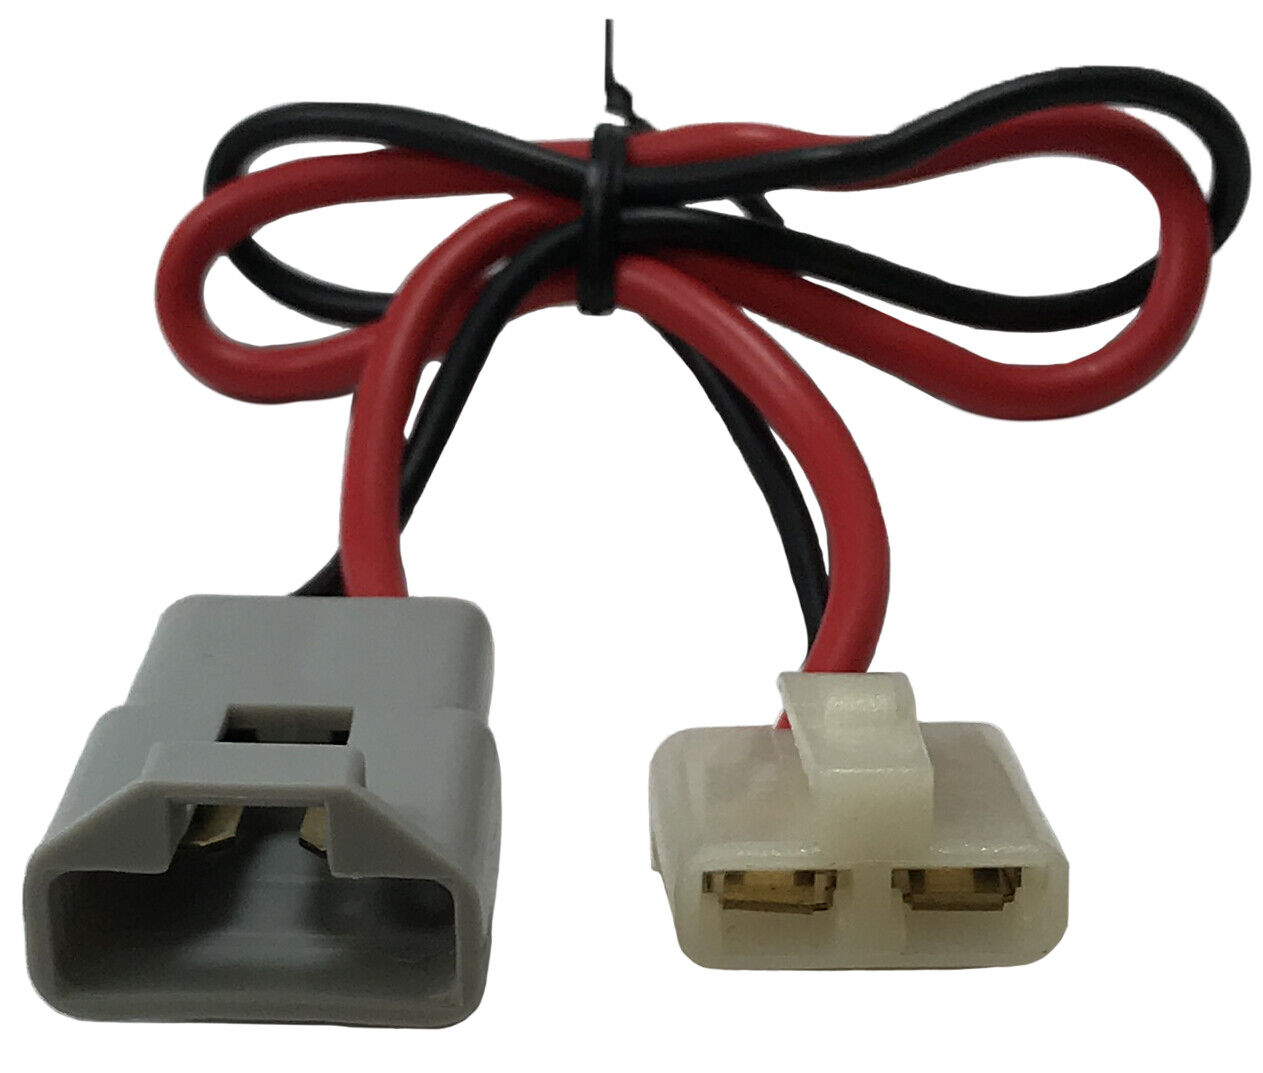 (2) Alternator & Voltage Regulator Connector Standard S705 Pigtail Harness